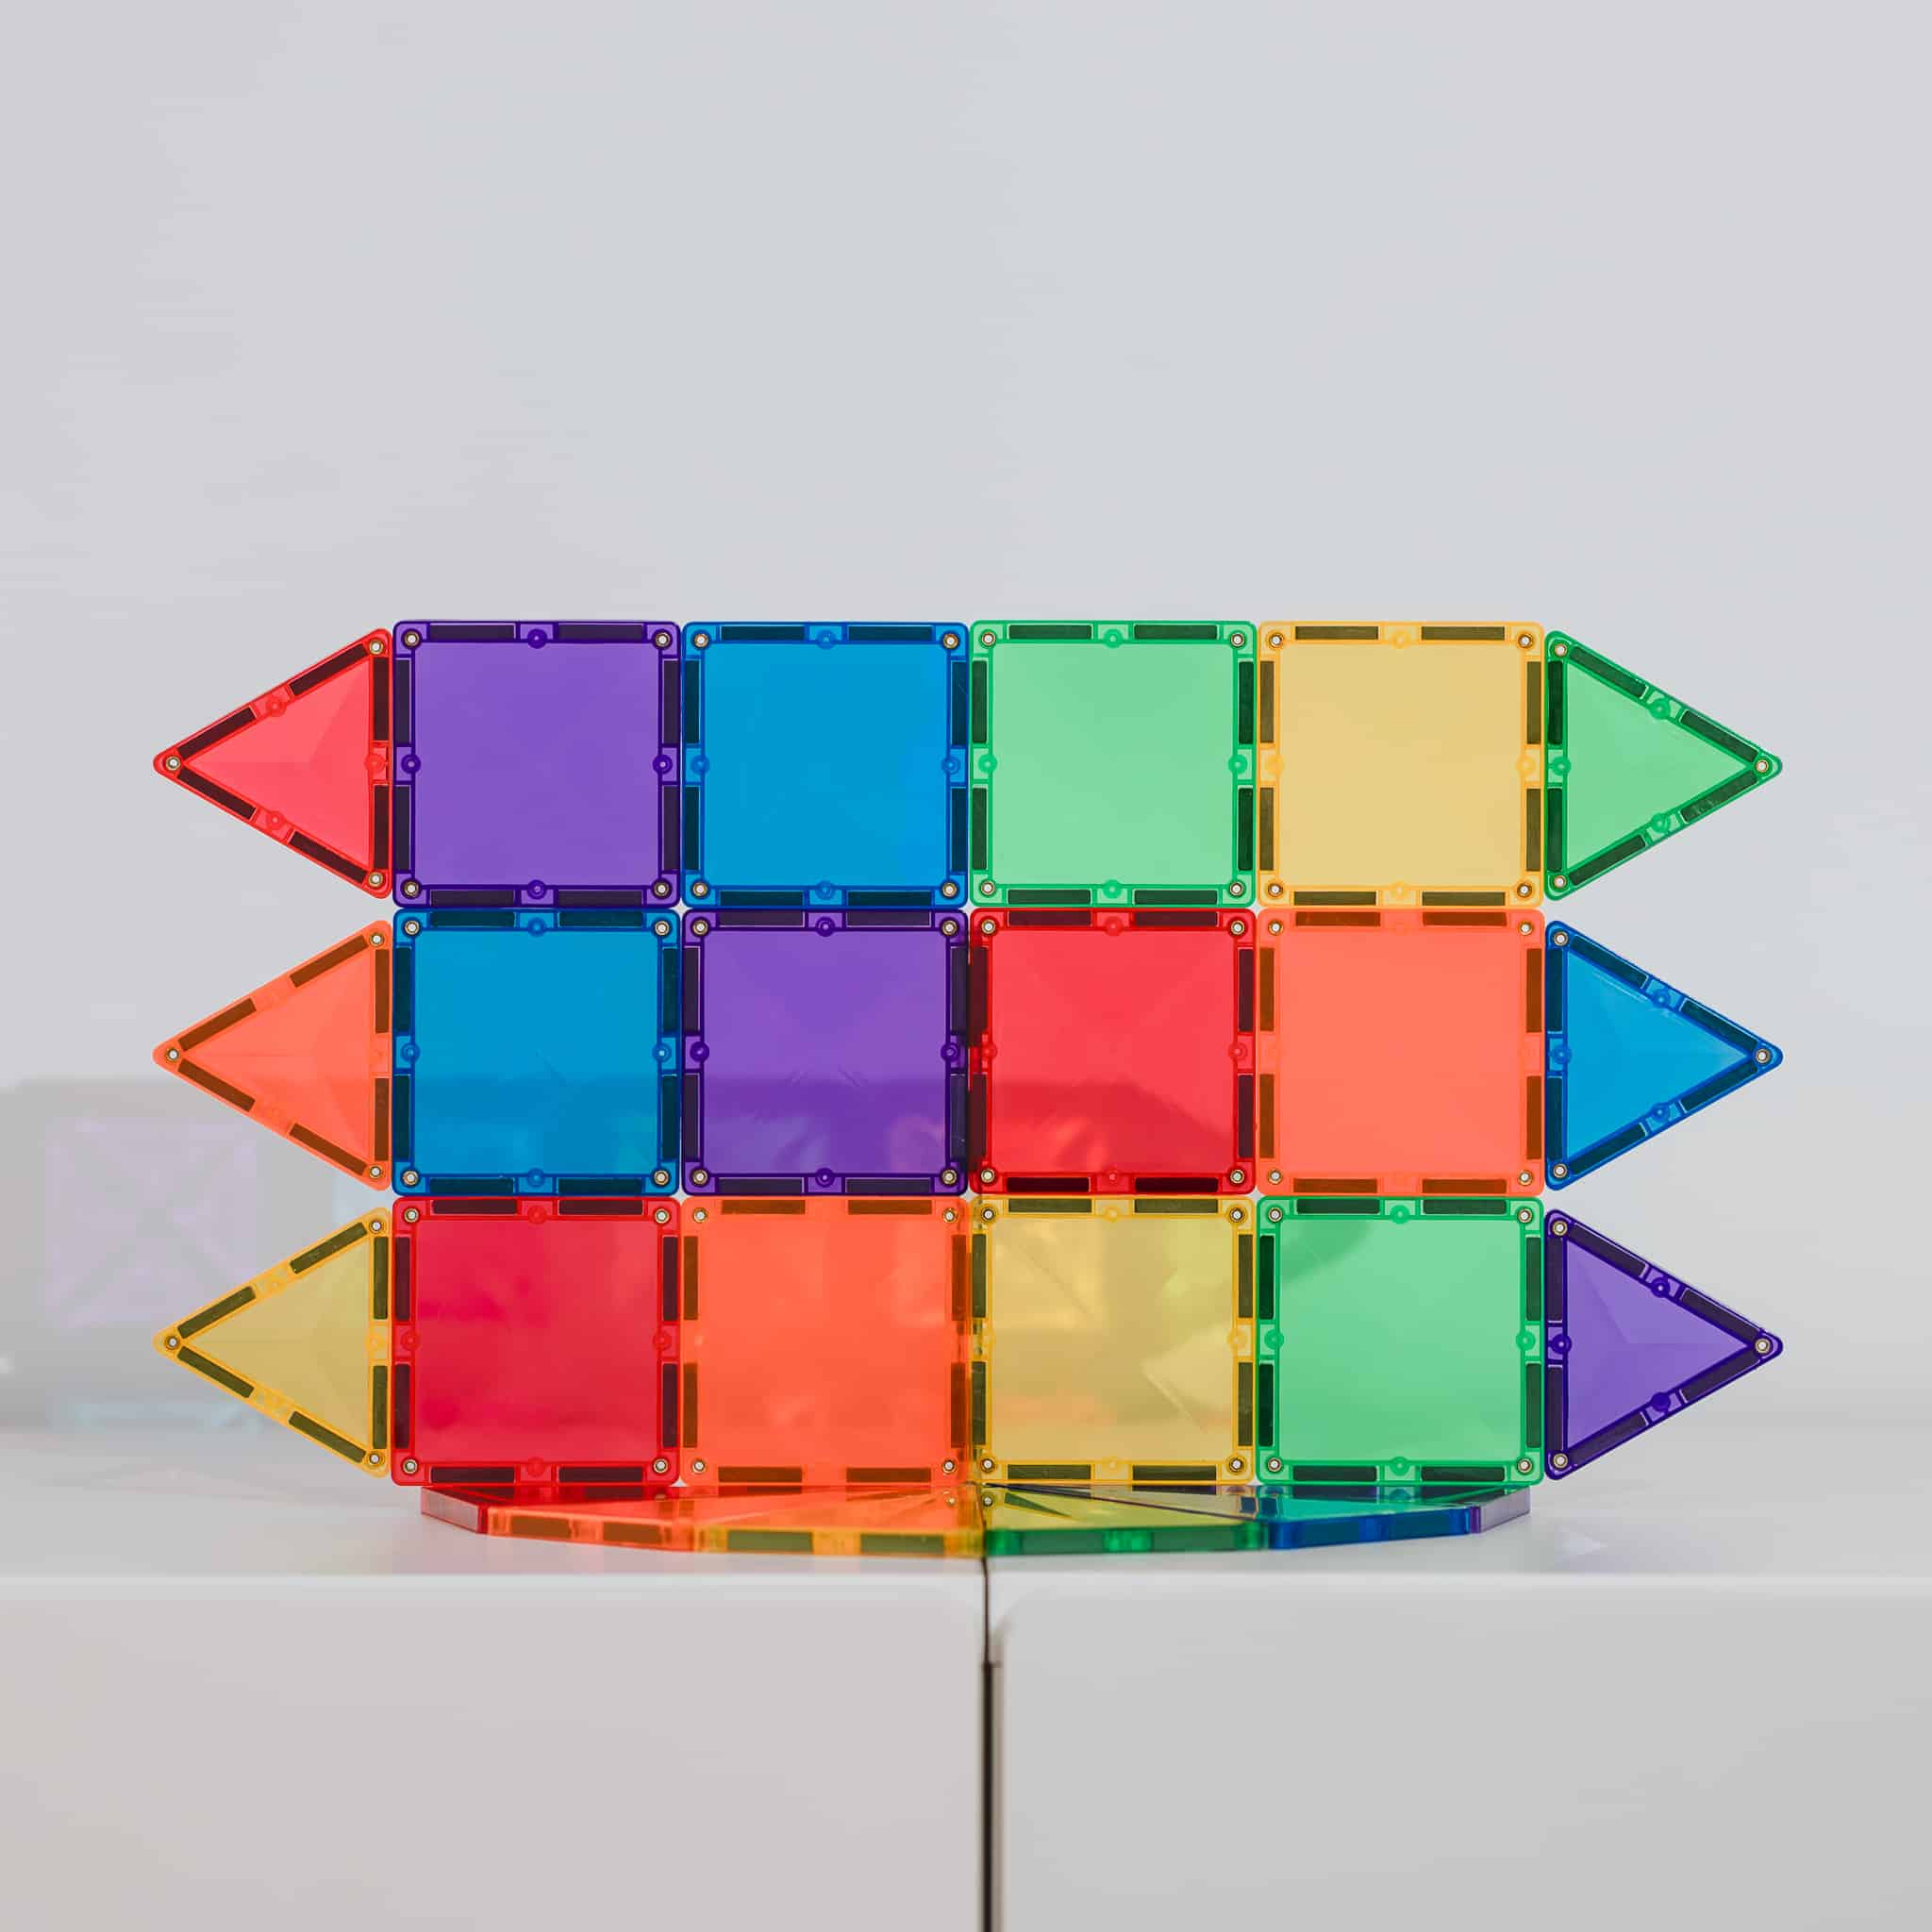 CONNETIX Magnetic Tiles - Rainbow Mini Pack 24pc